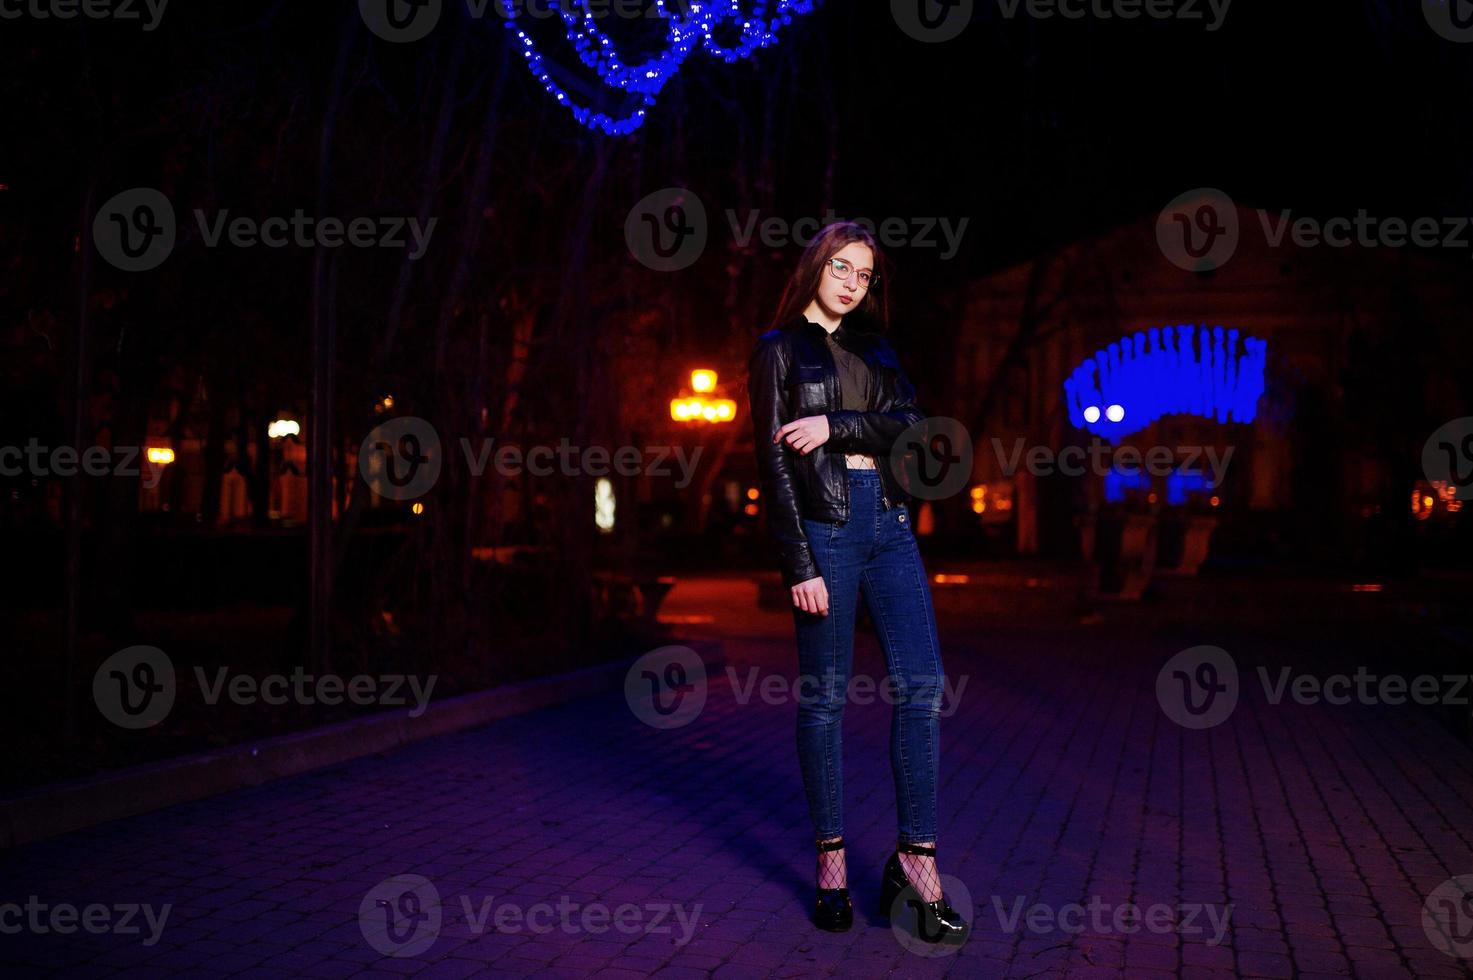 nattporträtt av flicka modell slitage på glasögon, jeans och skinnjacka mot blått ljus krans av stadsgatan. foto